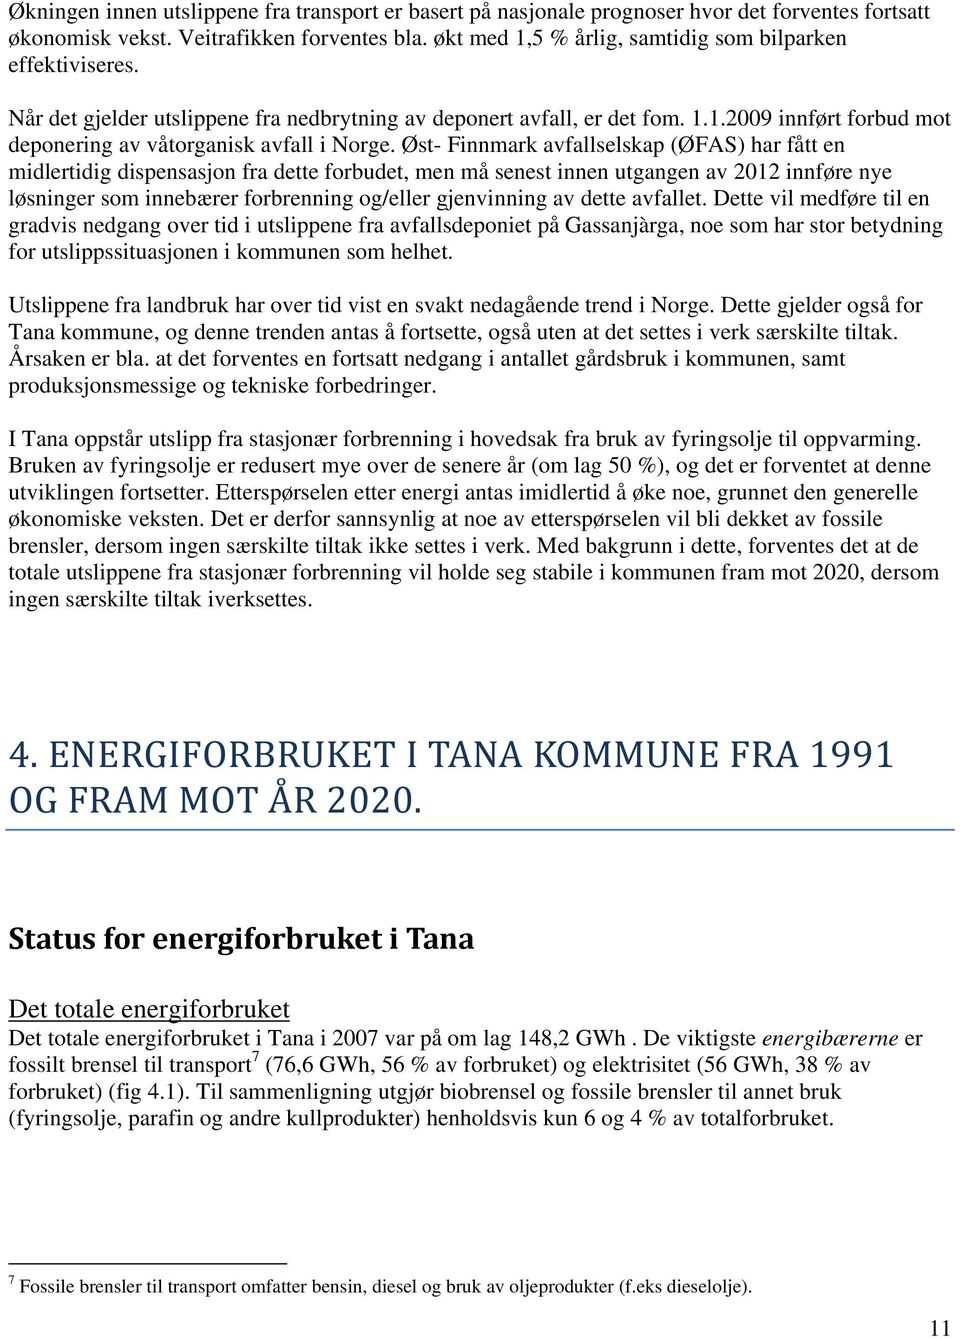 Øst- Finnmark avfallselskap (ØFAS) har fått en midlertidig dispensasjon fra dette forbudet, men må senest innen utgangen av 2012 innføre nye løsninger som innebærer forbrenning og/eller gjenvinning